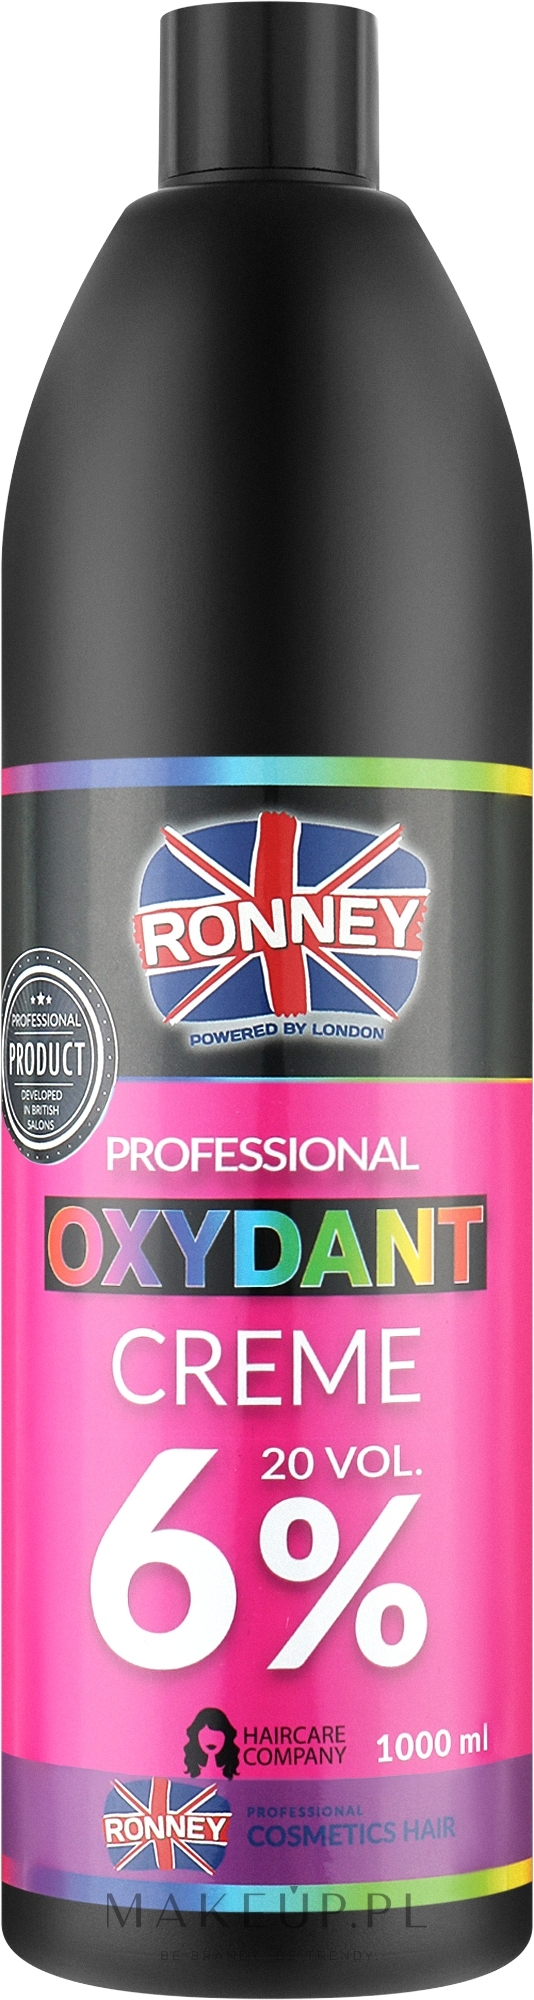 Emulsja utleniająca w kremie do rozjaśniania i farbowania włosów 6% - Ronney Professional Oxidant Creme  — Zdjęcie 1000 ml